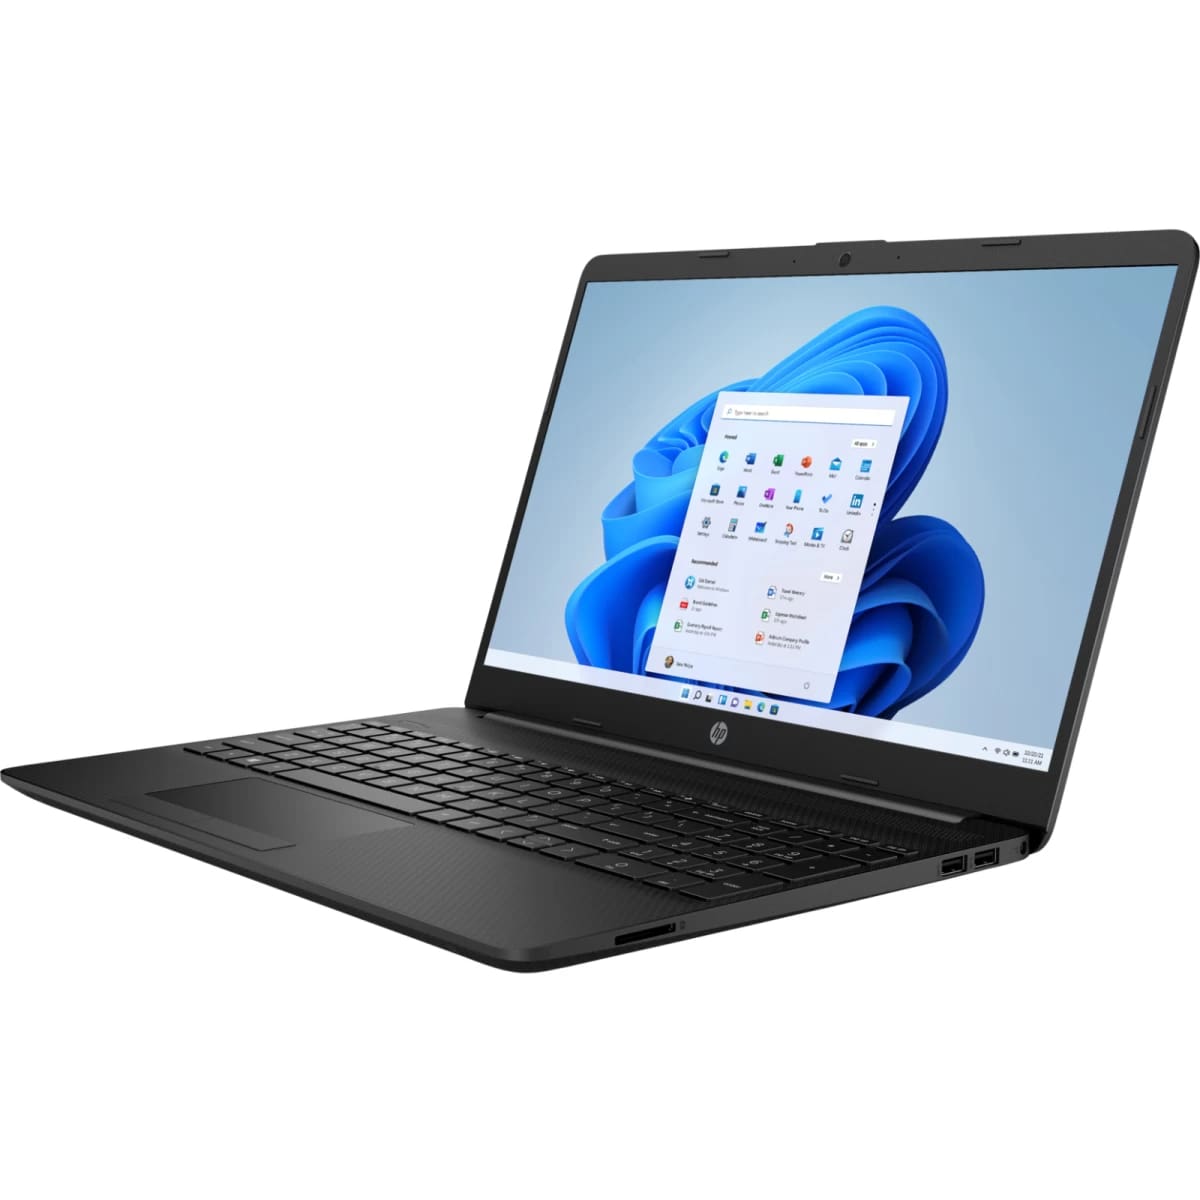 HP Laptop 15t-dw400 (2022) Intel Core i5 12Gen up to 4.4Ghz 10-Cores 12M Cash